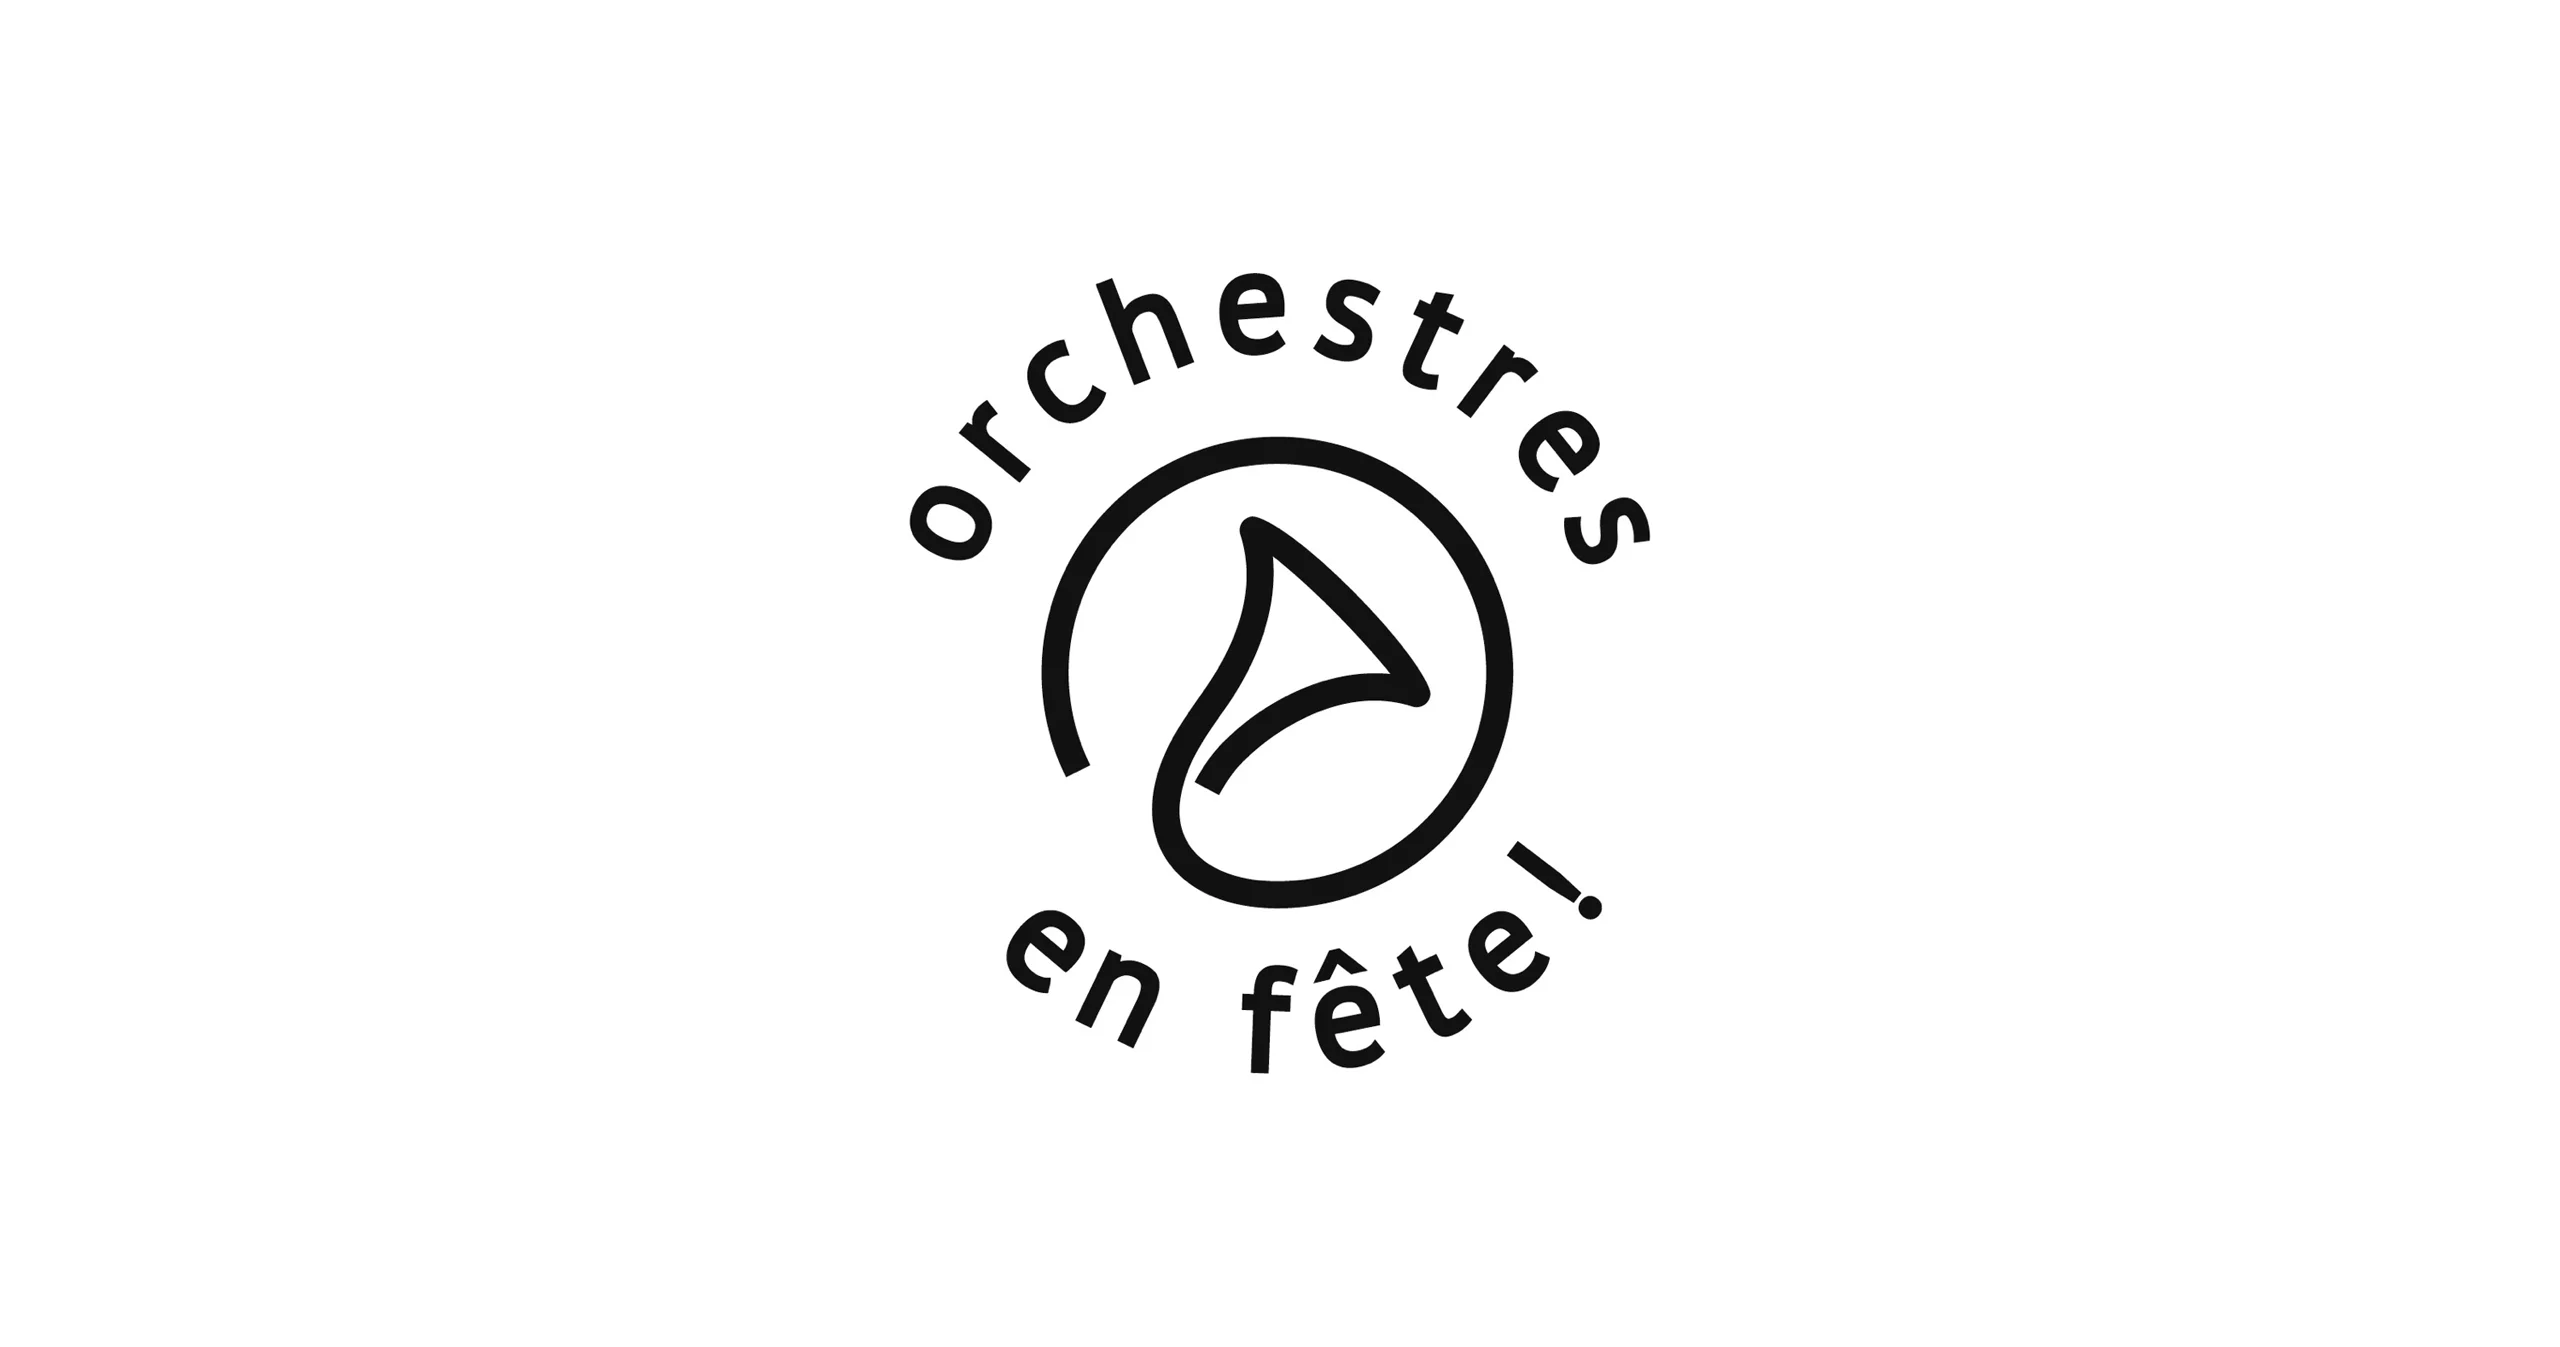 Logo de l'événement associé Orchestres en fête, sous une forme arrondi avec en son centre une forme instrumental